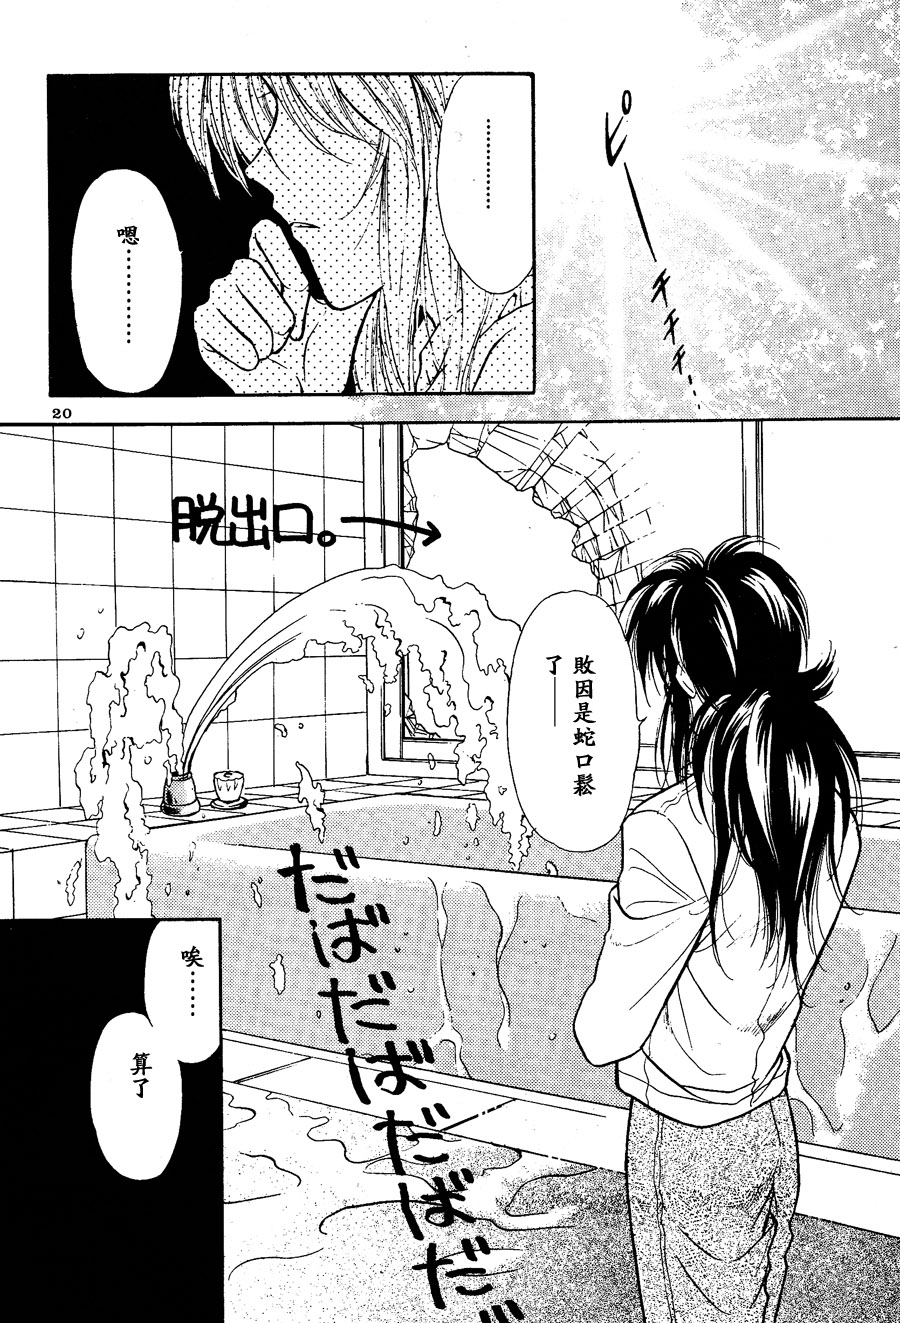  【漫画】金星力学/さがわ香野《shower》 Img_1204